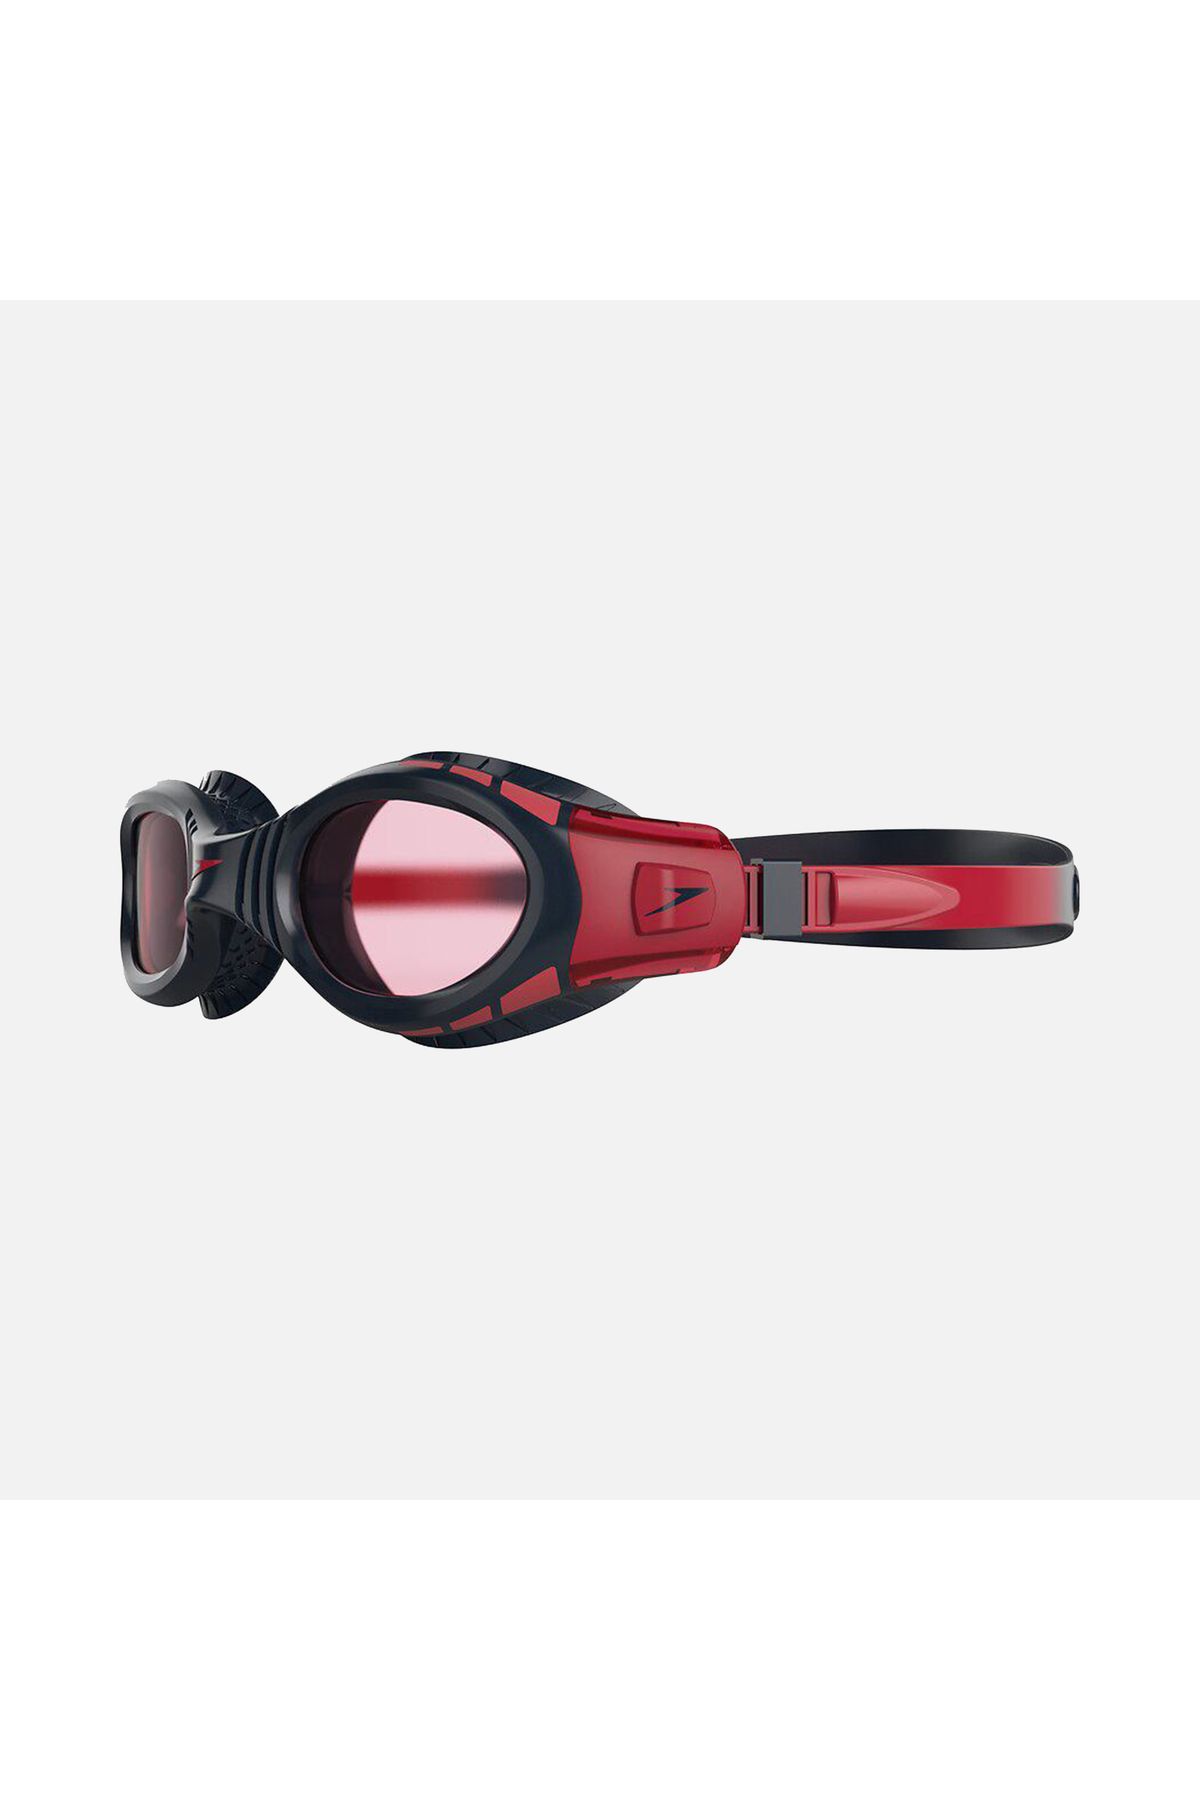 SPEEDO Futura Biofuse Flexiseal Goggles Çocuk Yüzücü Gözlüğü